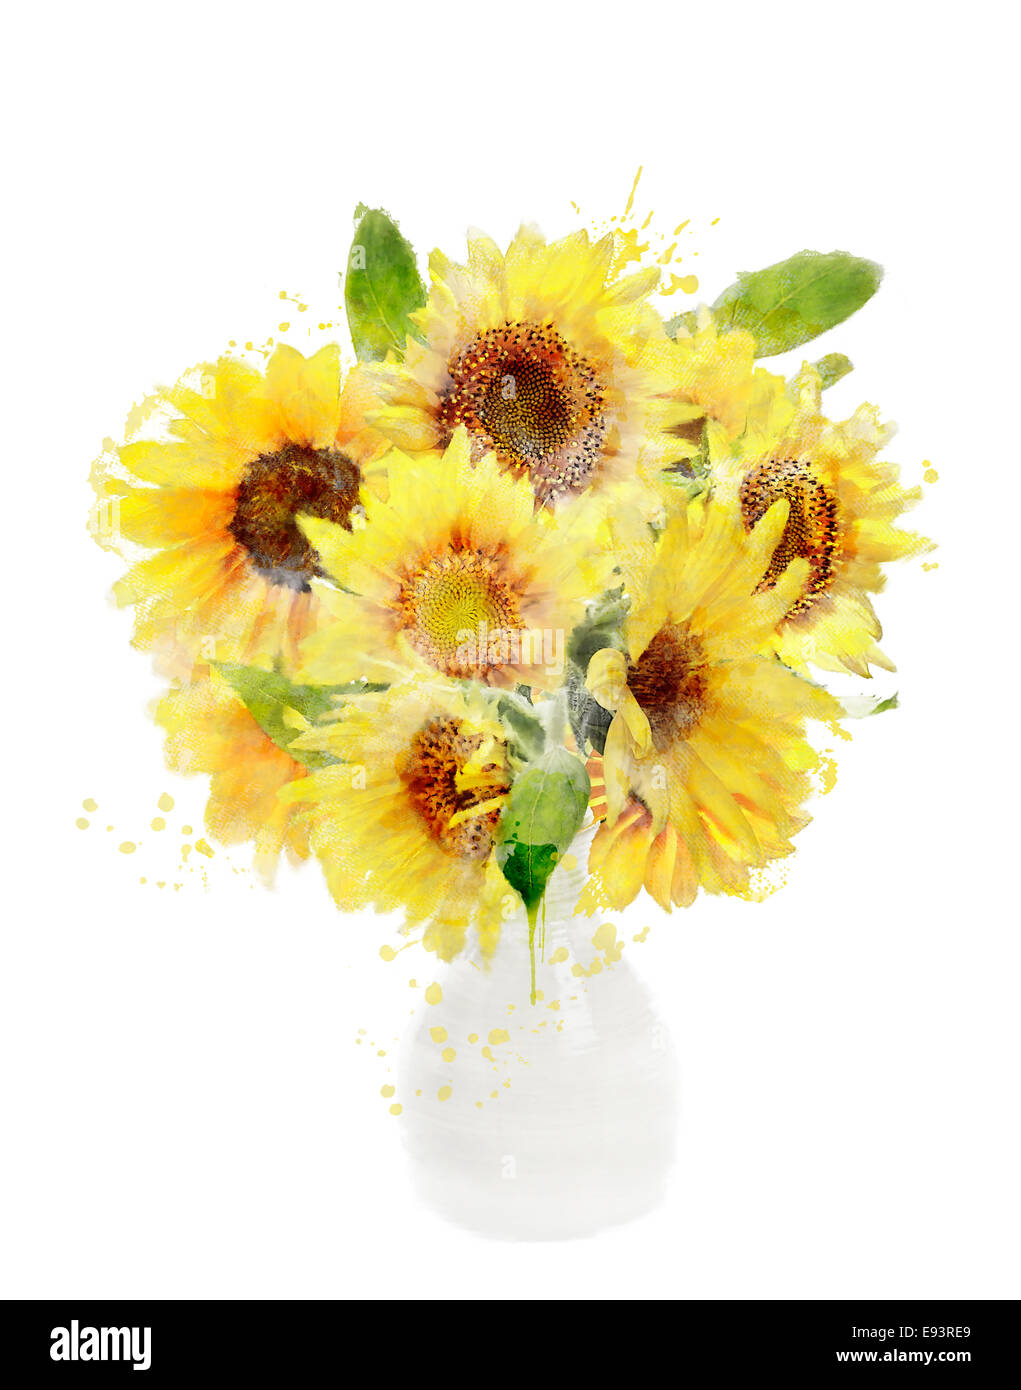 Aquarelle peinture digitale de tournesols bouquet dans un vase Banque D'Images